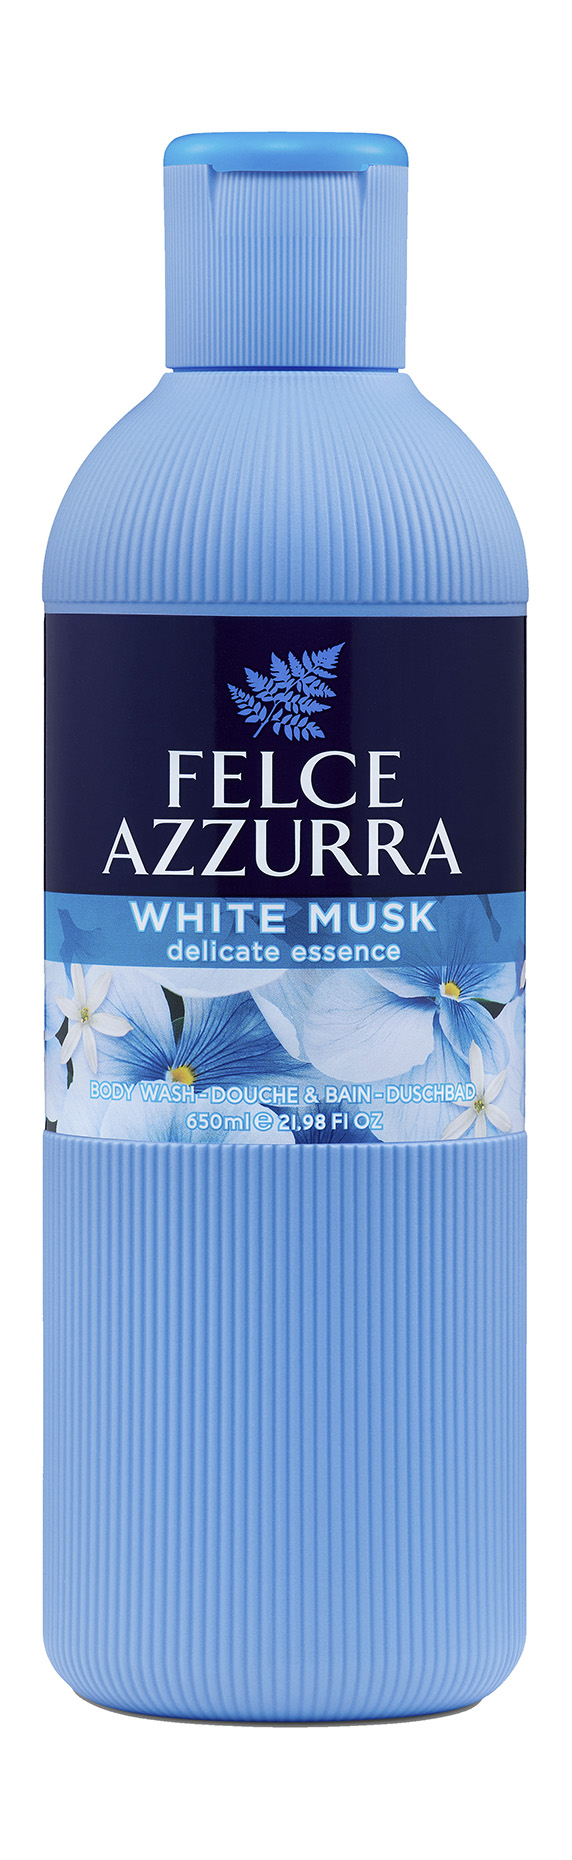 Гель для душа Felce Azzurra White Musk Delicate Essence парфюмированный, 650 мл